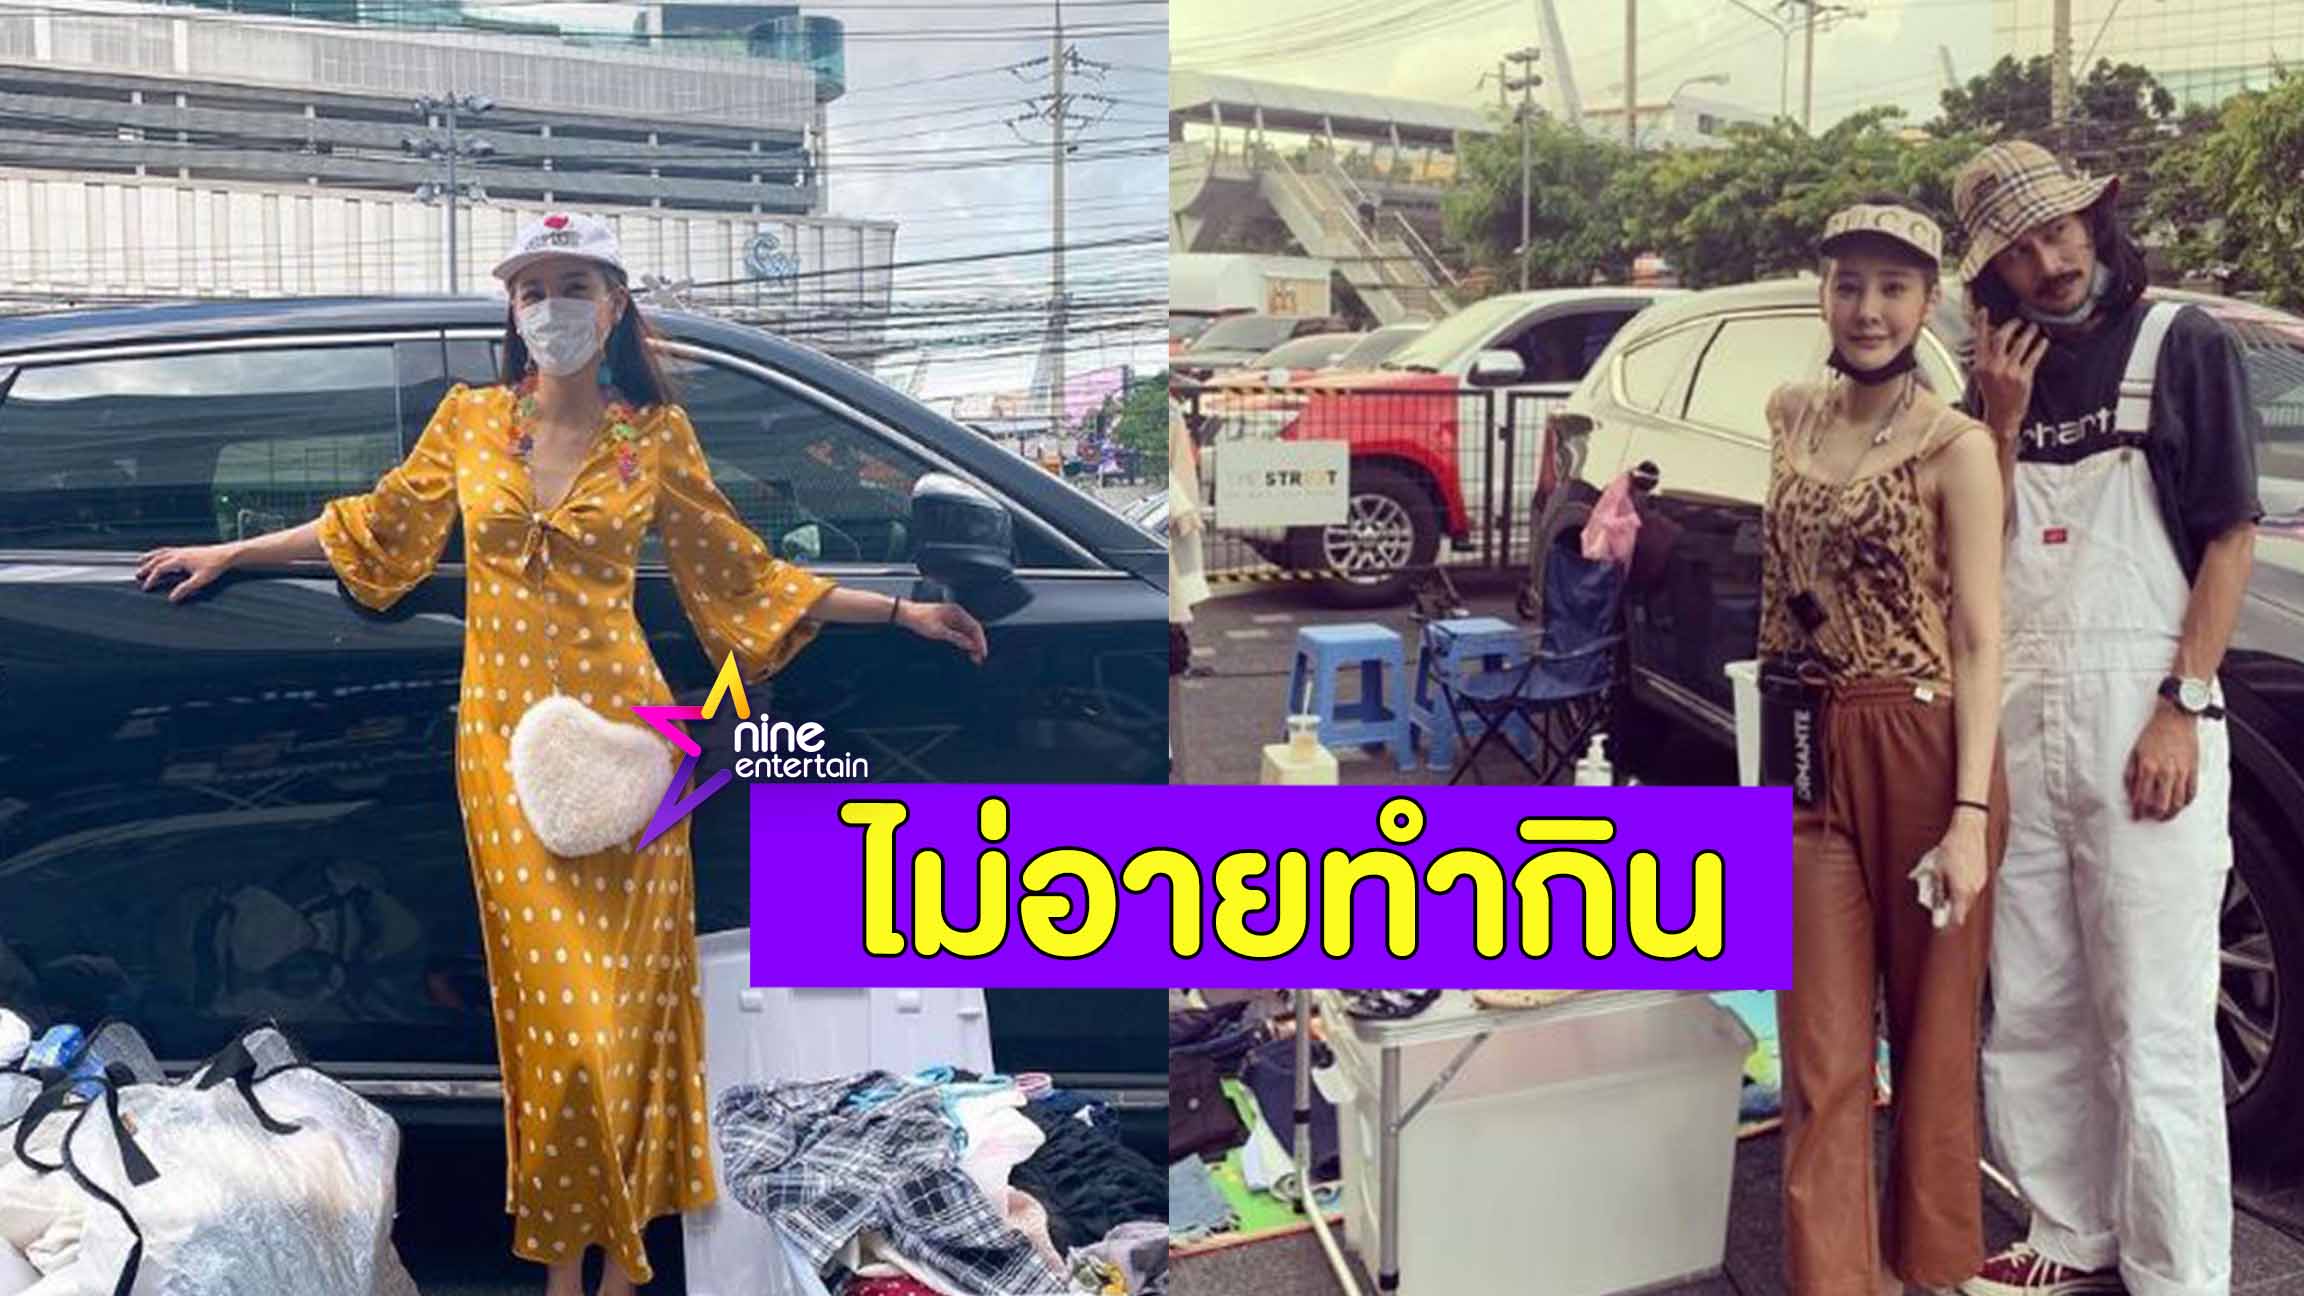 แตงโม” ไม่อาย ขายเสื้อมือ 2 ตลาดนัด “เบสท์-ตงตง” ช่วยอุดหนุน -  Nineentertain ข่าวบันเทิงอันดับ 1 ของไทย